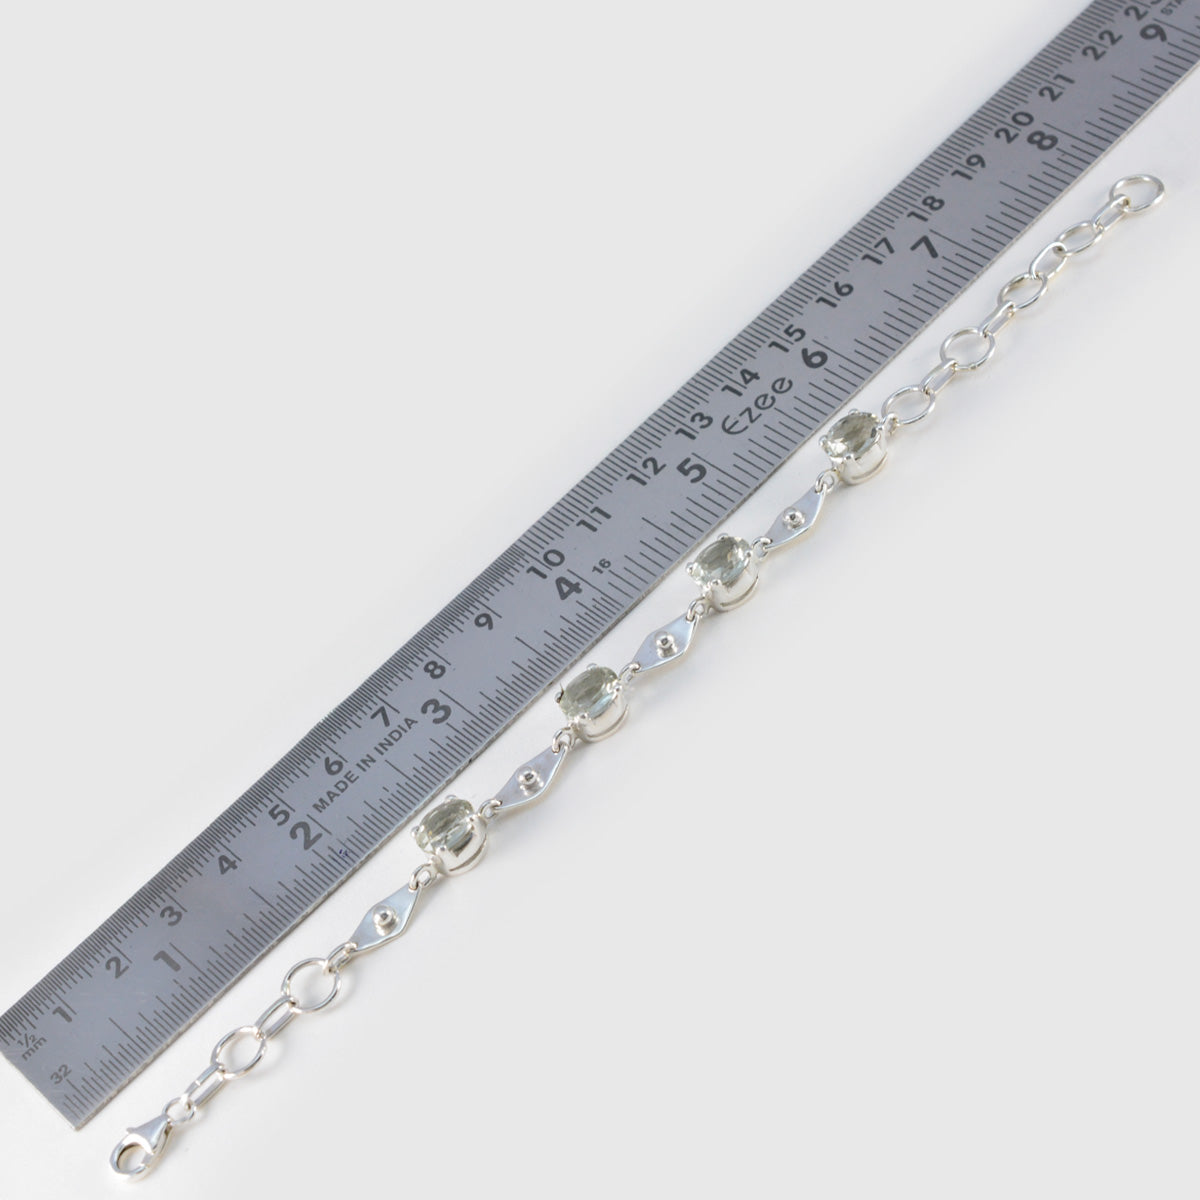 Riyo Supply 925 Sterling Silber Armband für Mädchen, grünes Amethyst-Armband, Krappenfassung, Armband mit Fischhaken-Gliederarmband, Größe L, 15,2–21,6 cm.